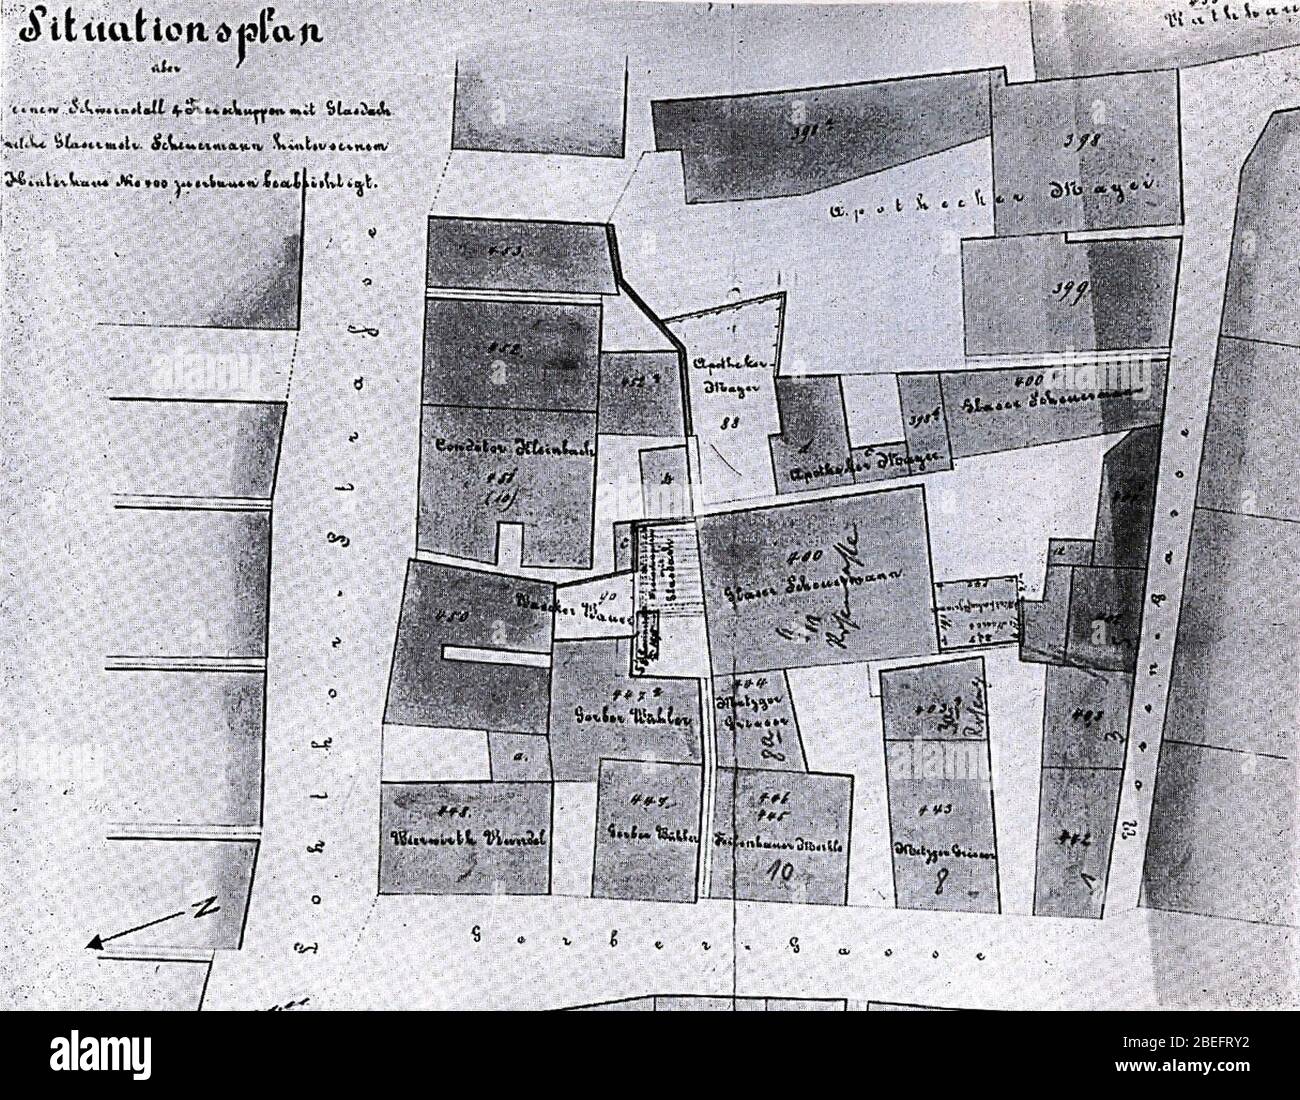 Heilbronn, Mayer'sche Apotheke zur Rose, Rosengasse 5 und 9, Situationsplan  von 1869 Stock Photo - Alamy